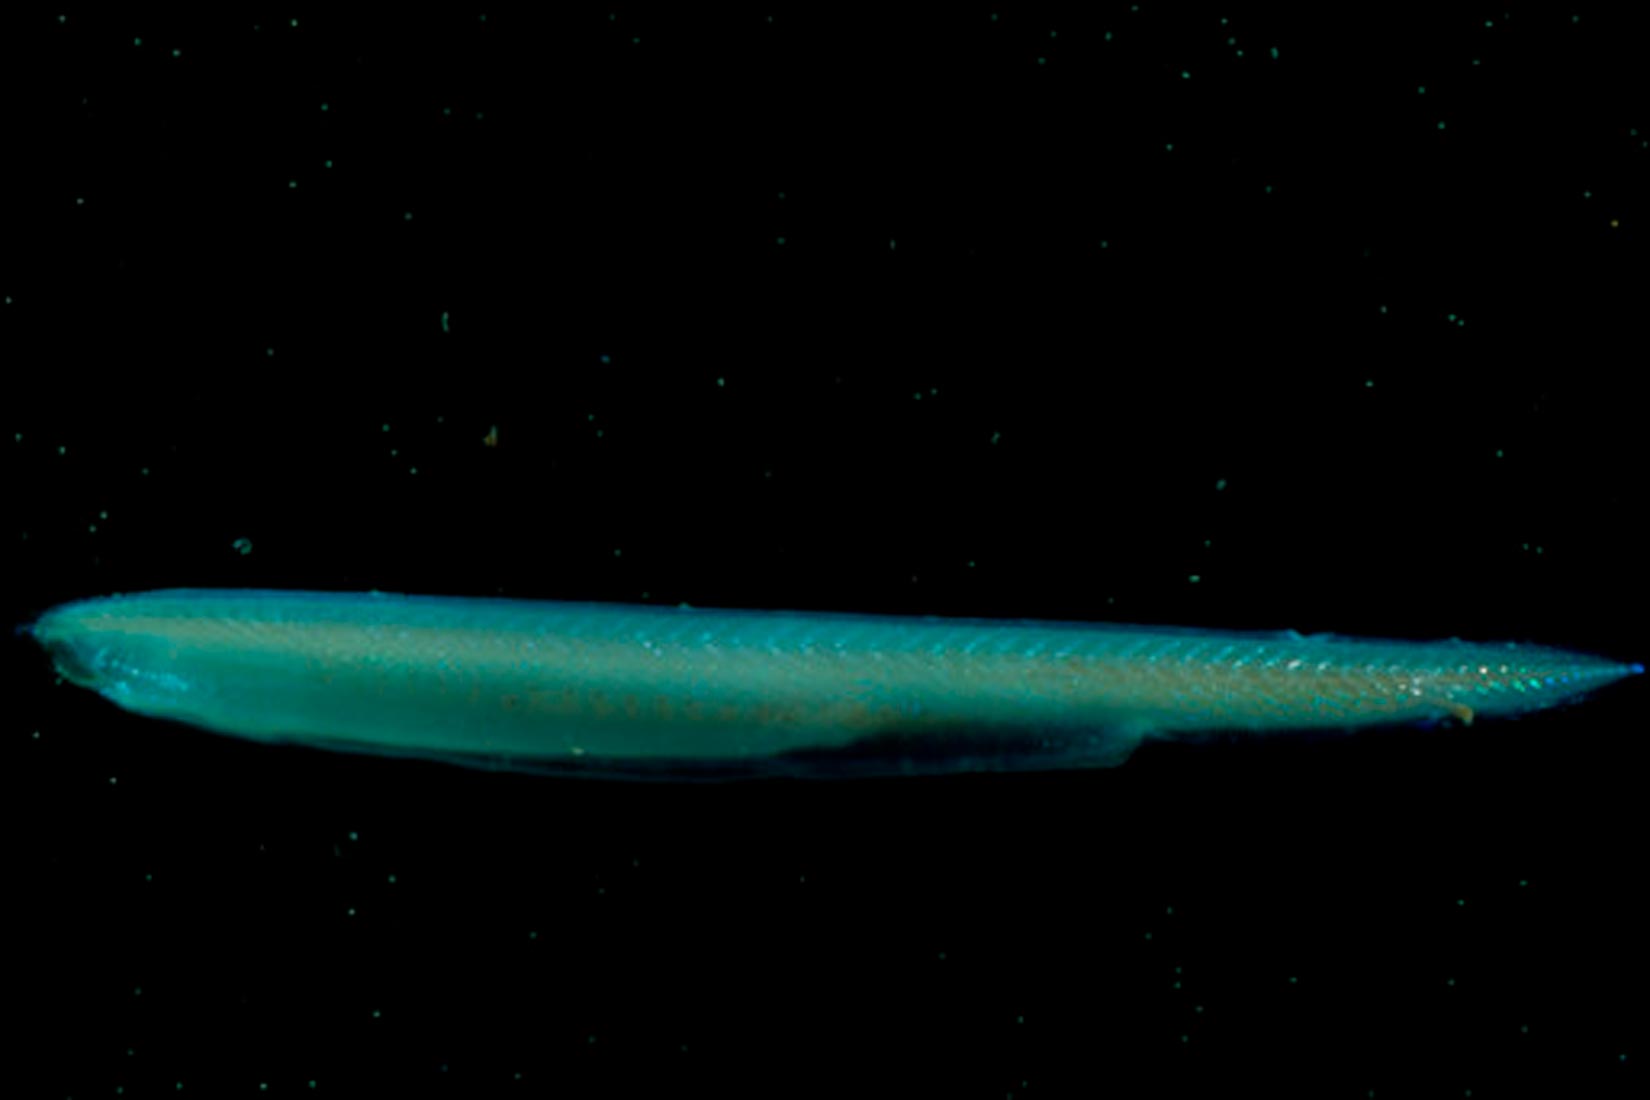 Fotografija prikazuje kopljaču u tamnoj vodi. Kopljača podsjeća na izduženu tanku ribu, ali bez jasno vidljivih peraja, vrlo sitnim očima i zašiljenim repom, a cijelo tijelo odaje tirkizni odsjaj.